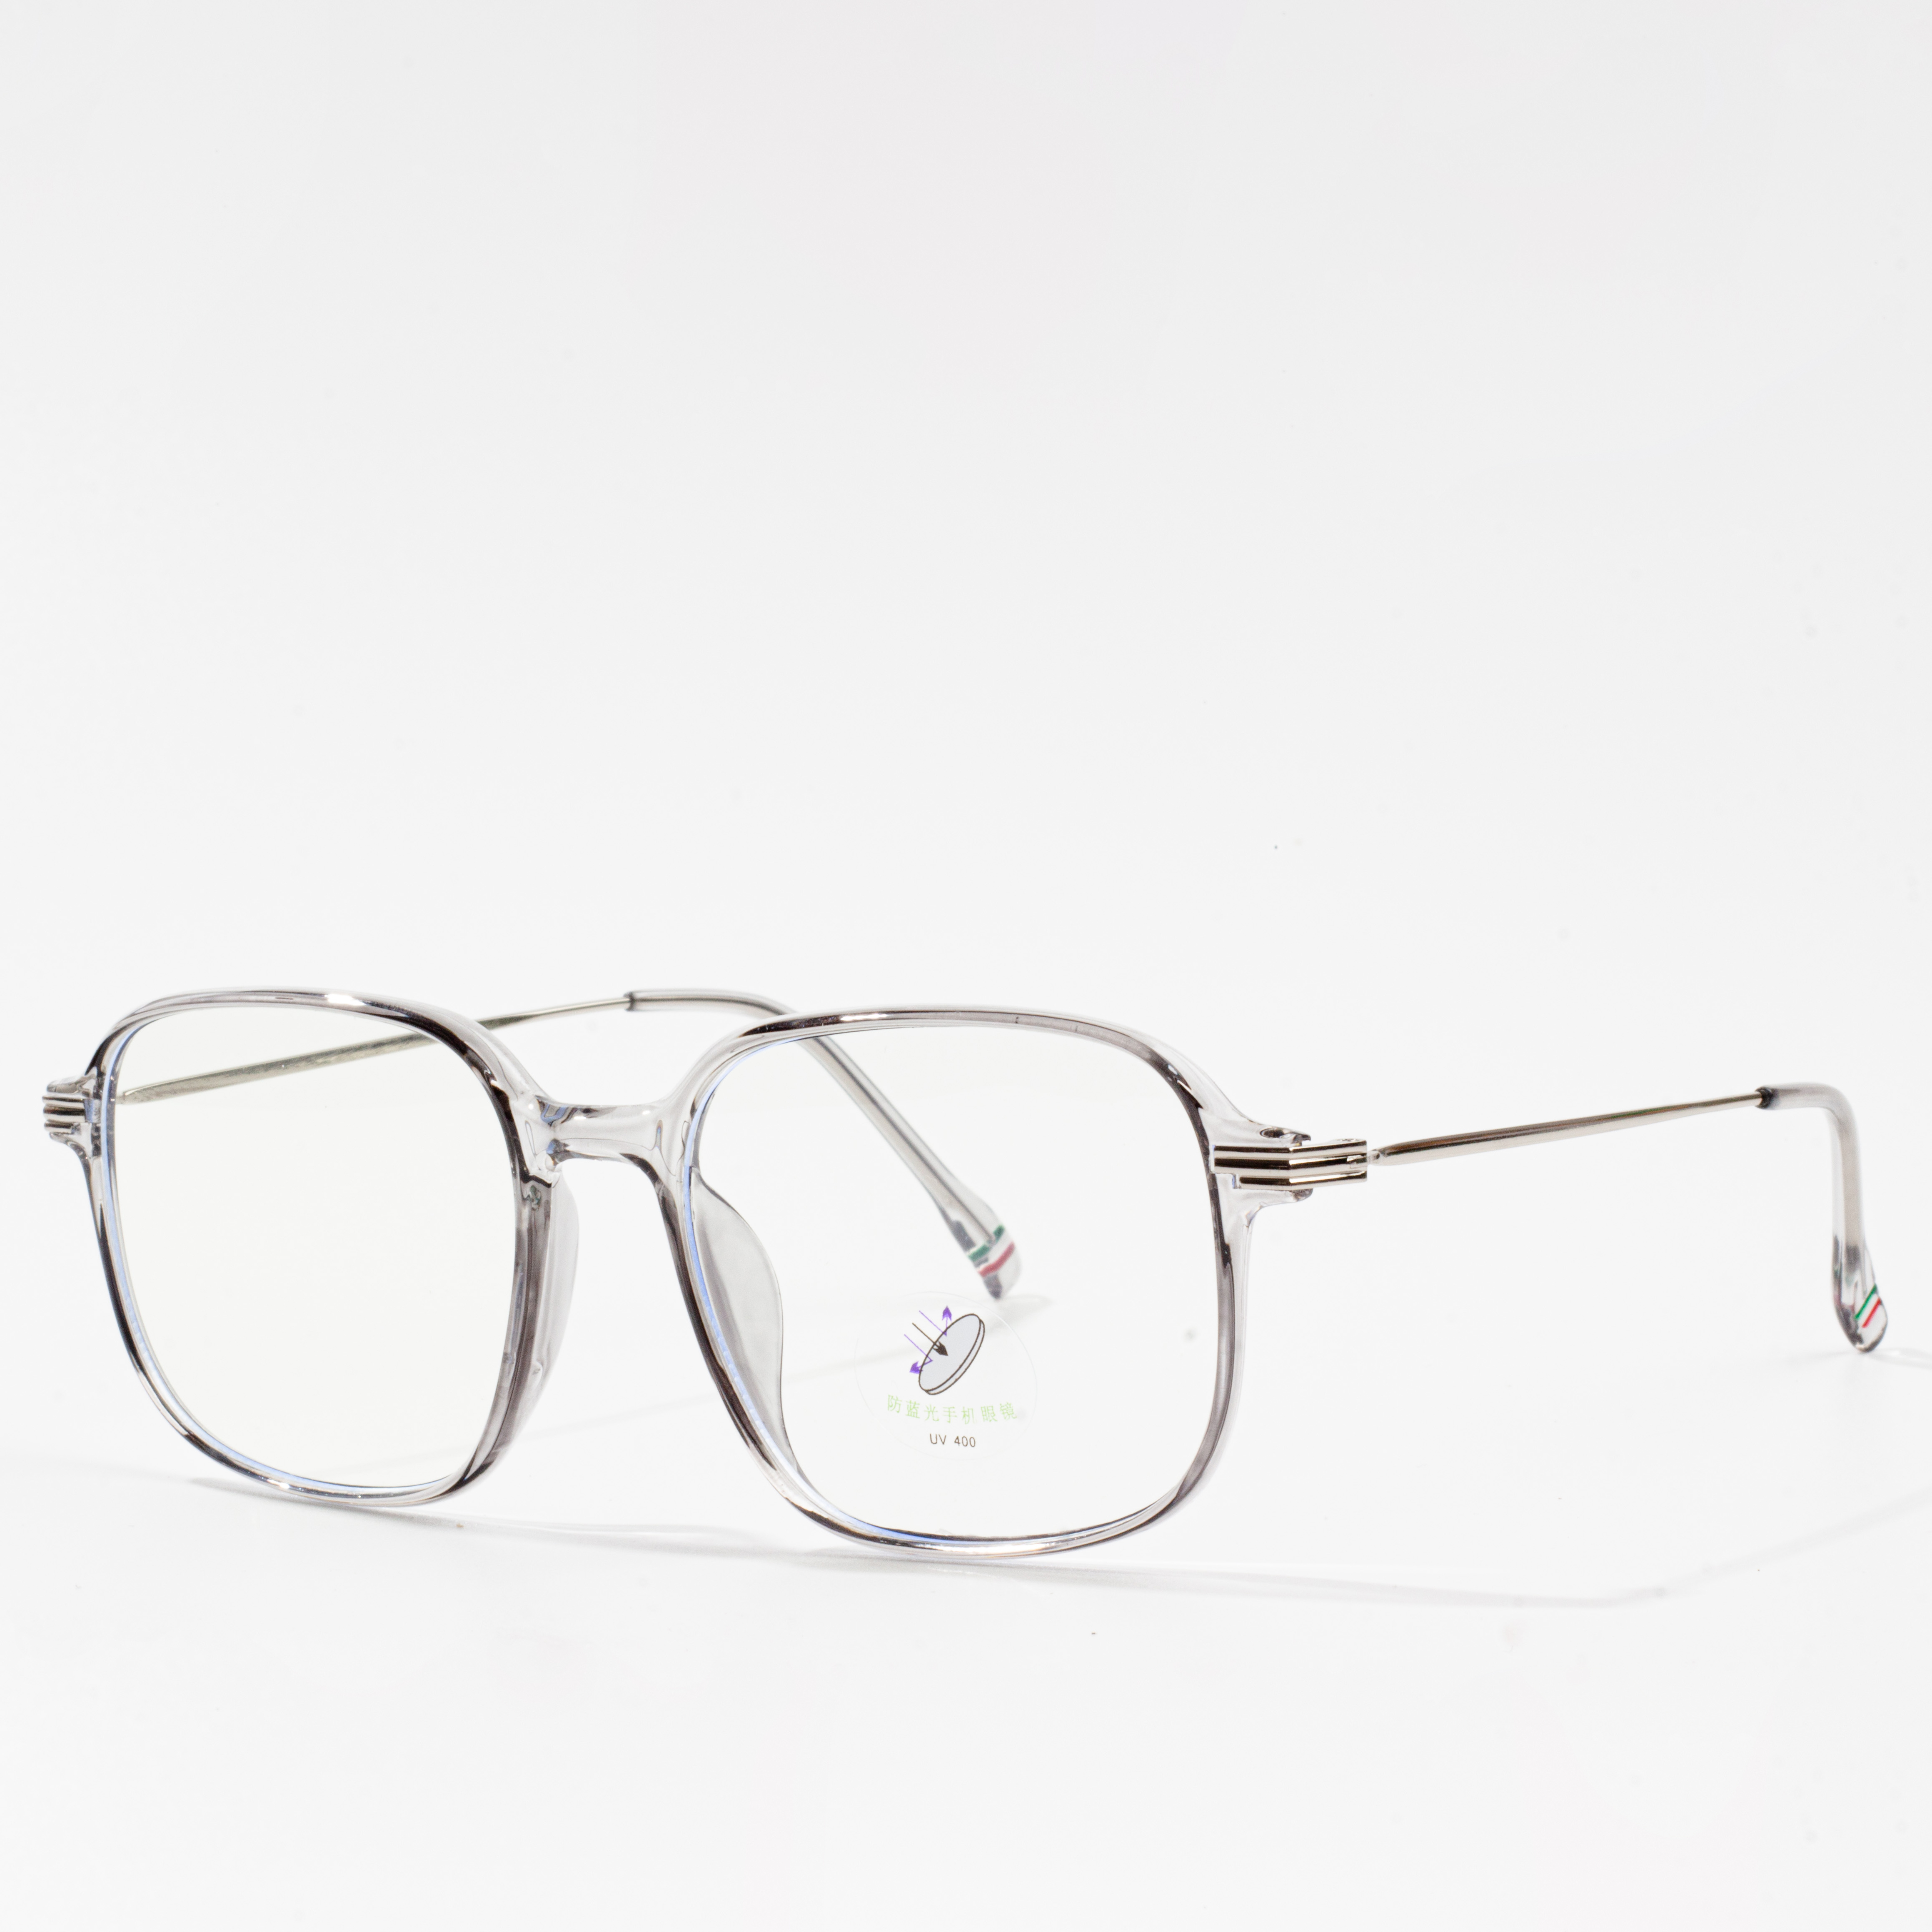 eyeglass frames vehivavy